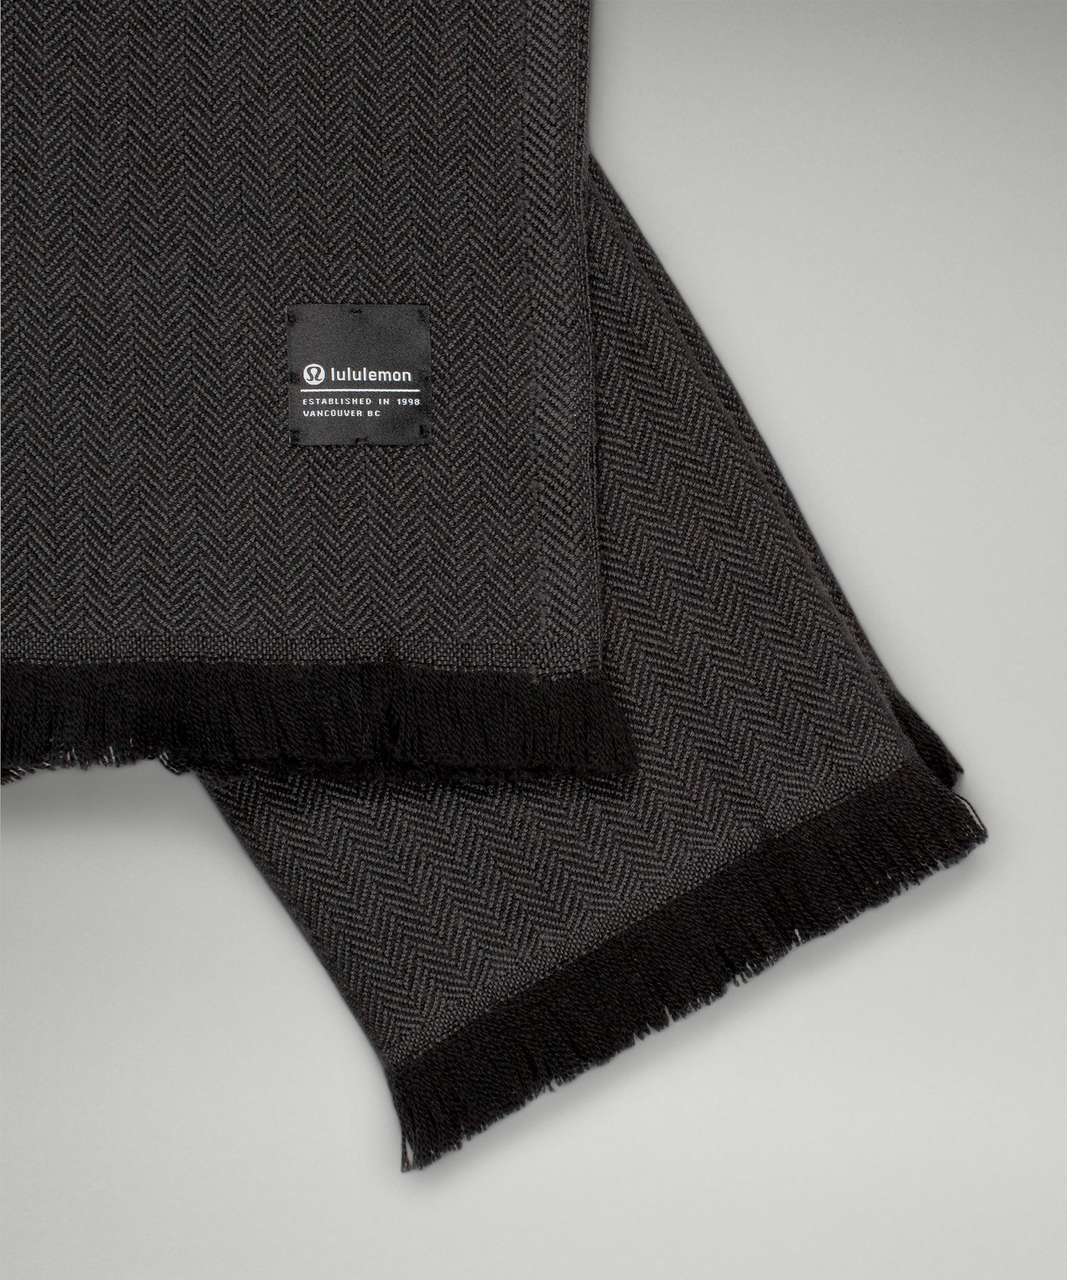 Lululemon Wool Blanket Scarf - Black / Graphite Grey